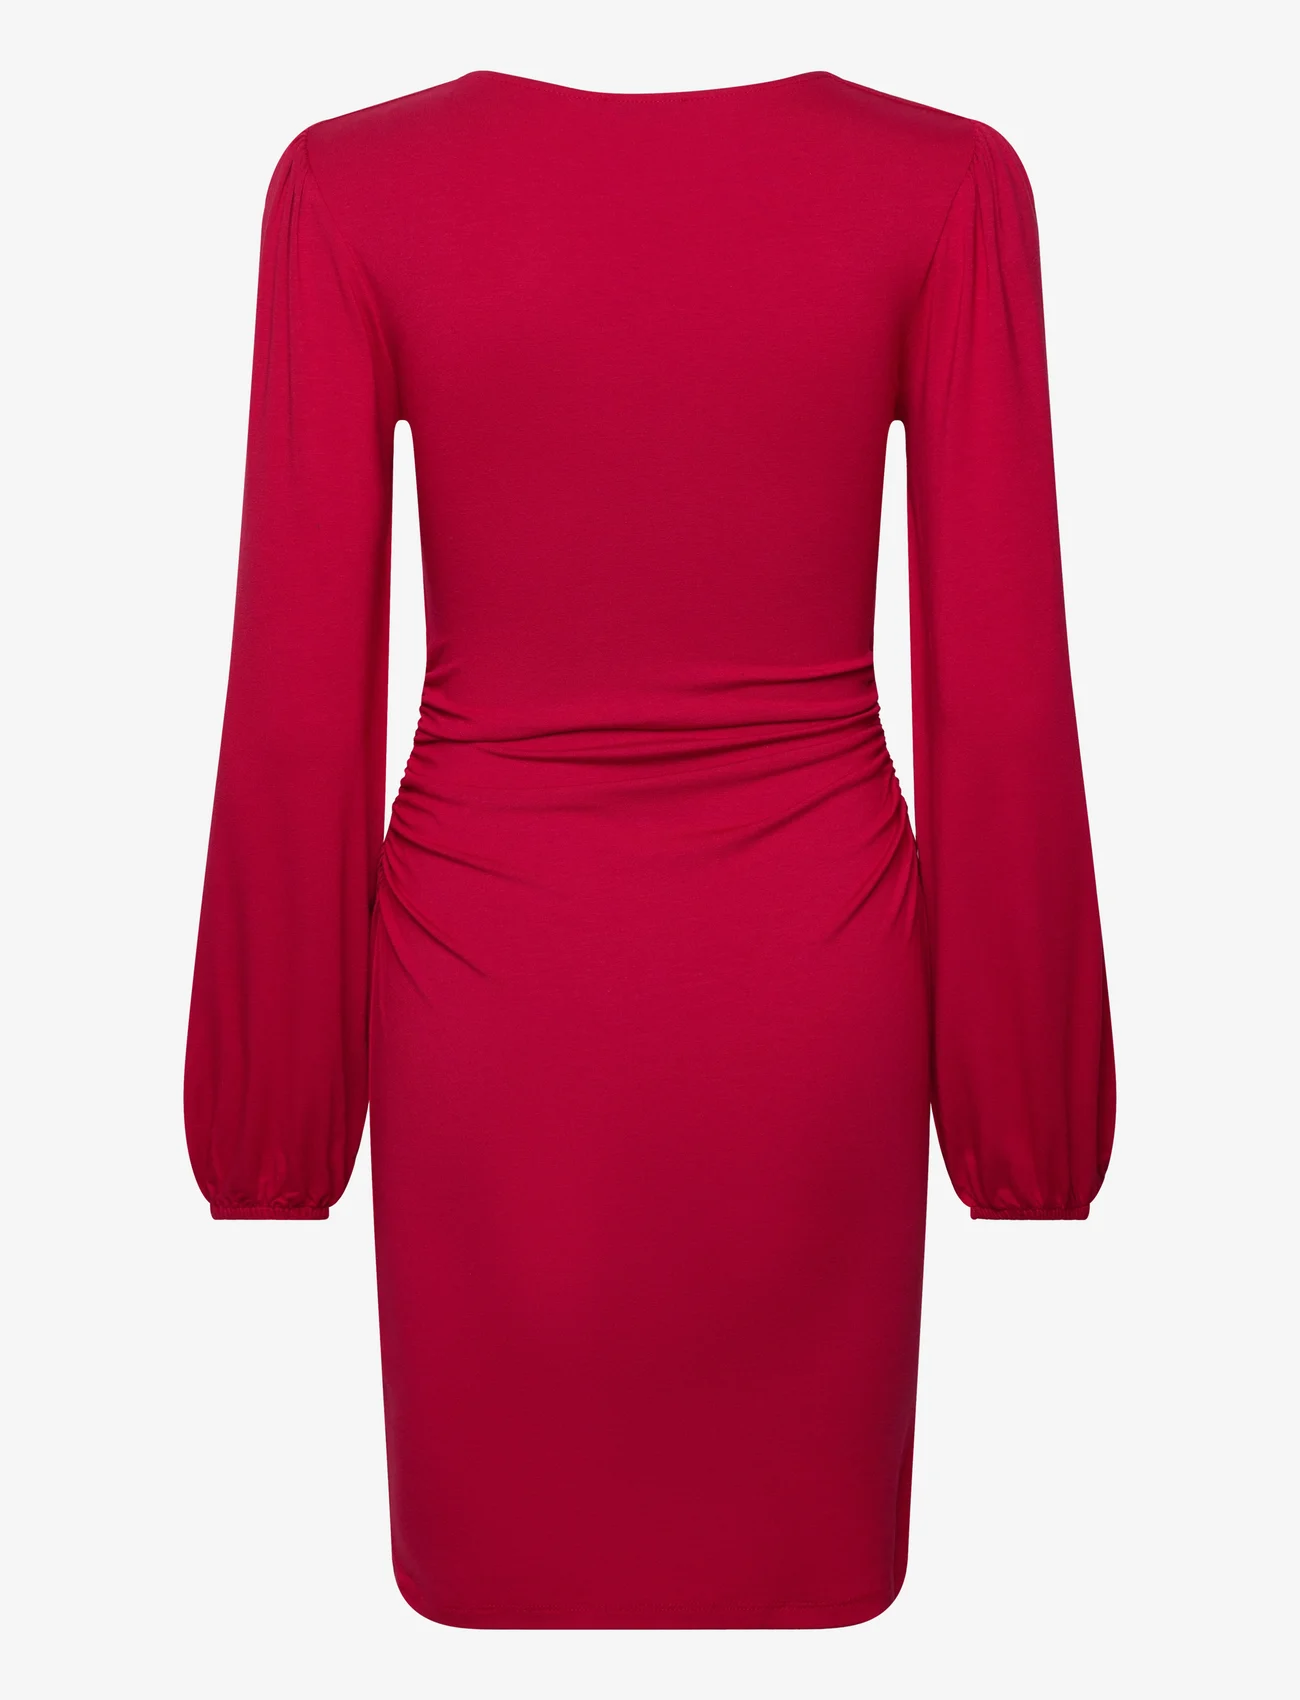 Bubbleroom - Rudina Puff Sleeve Short Dress - odzież imprezowa w cenach outletowych - red - 1